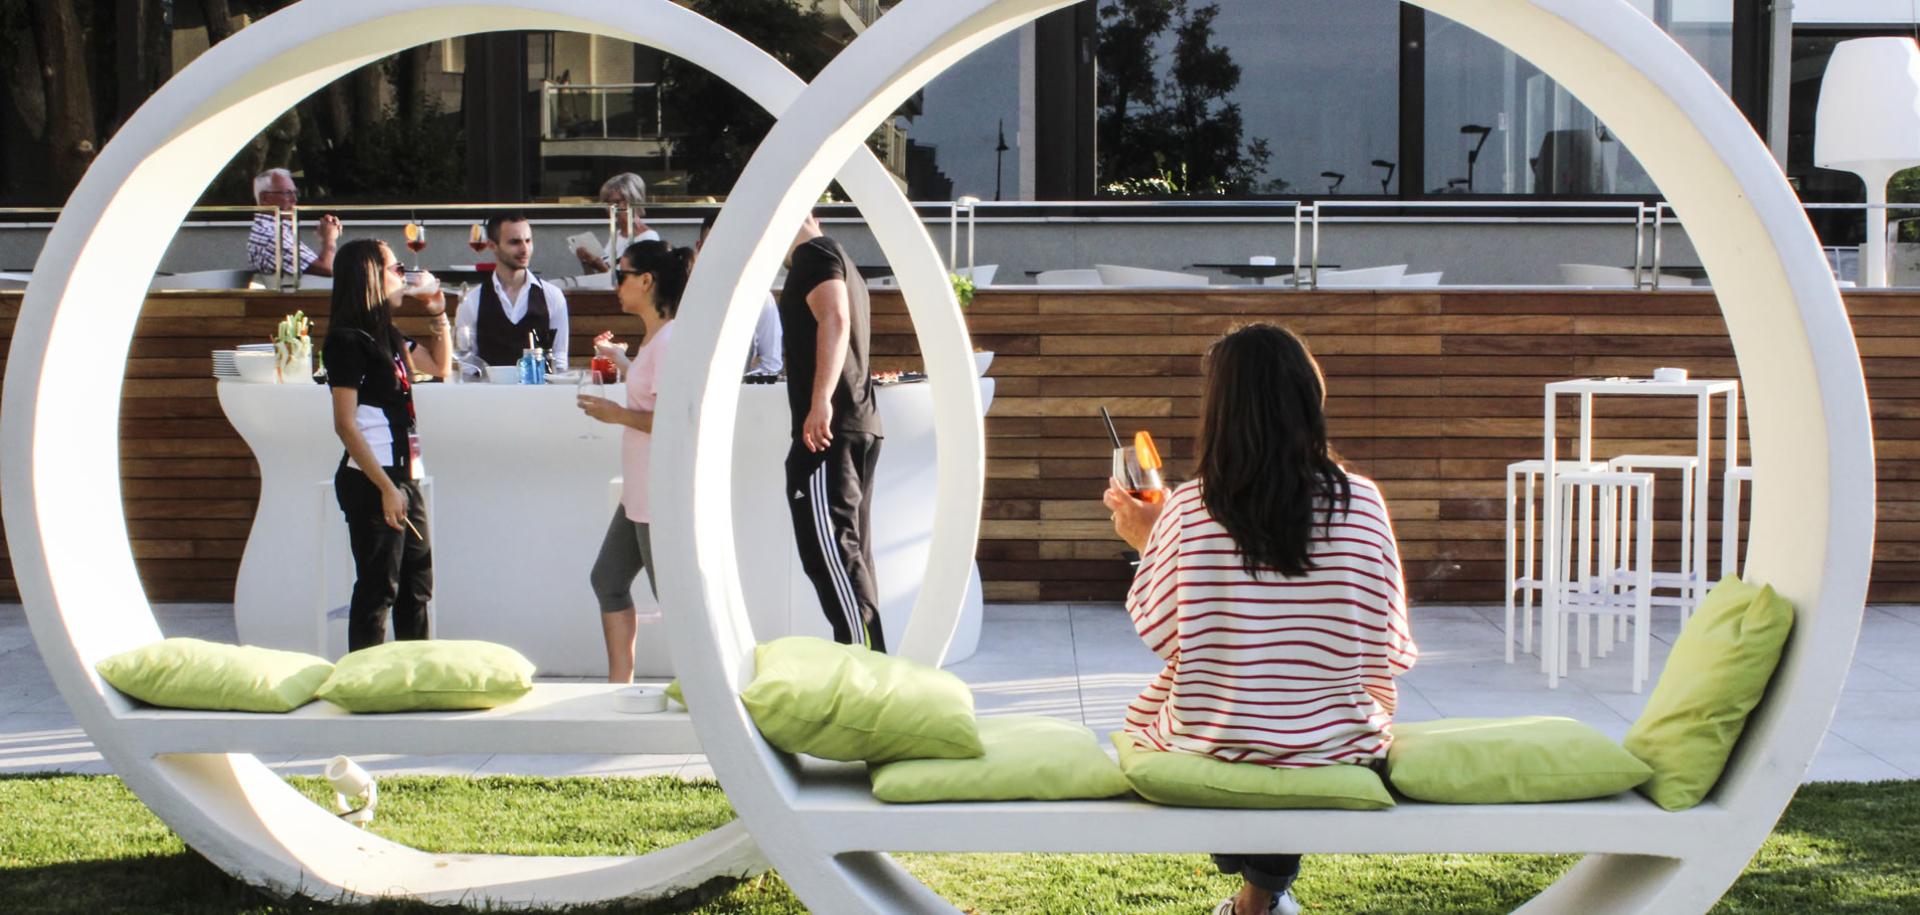 Persone che socializzano all'aperto con bevande, seduti su sedie circolari moderne.